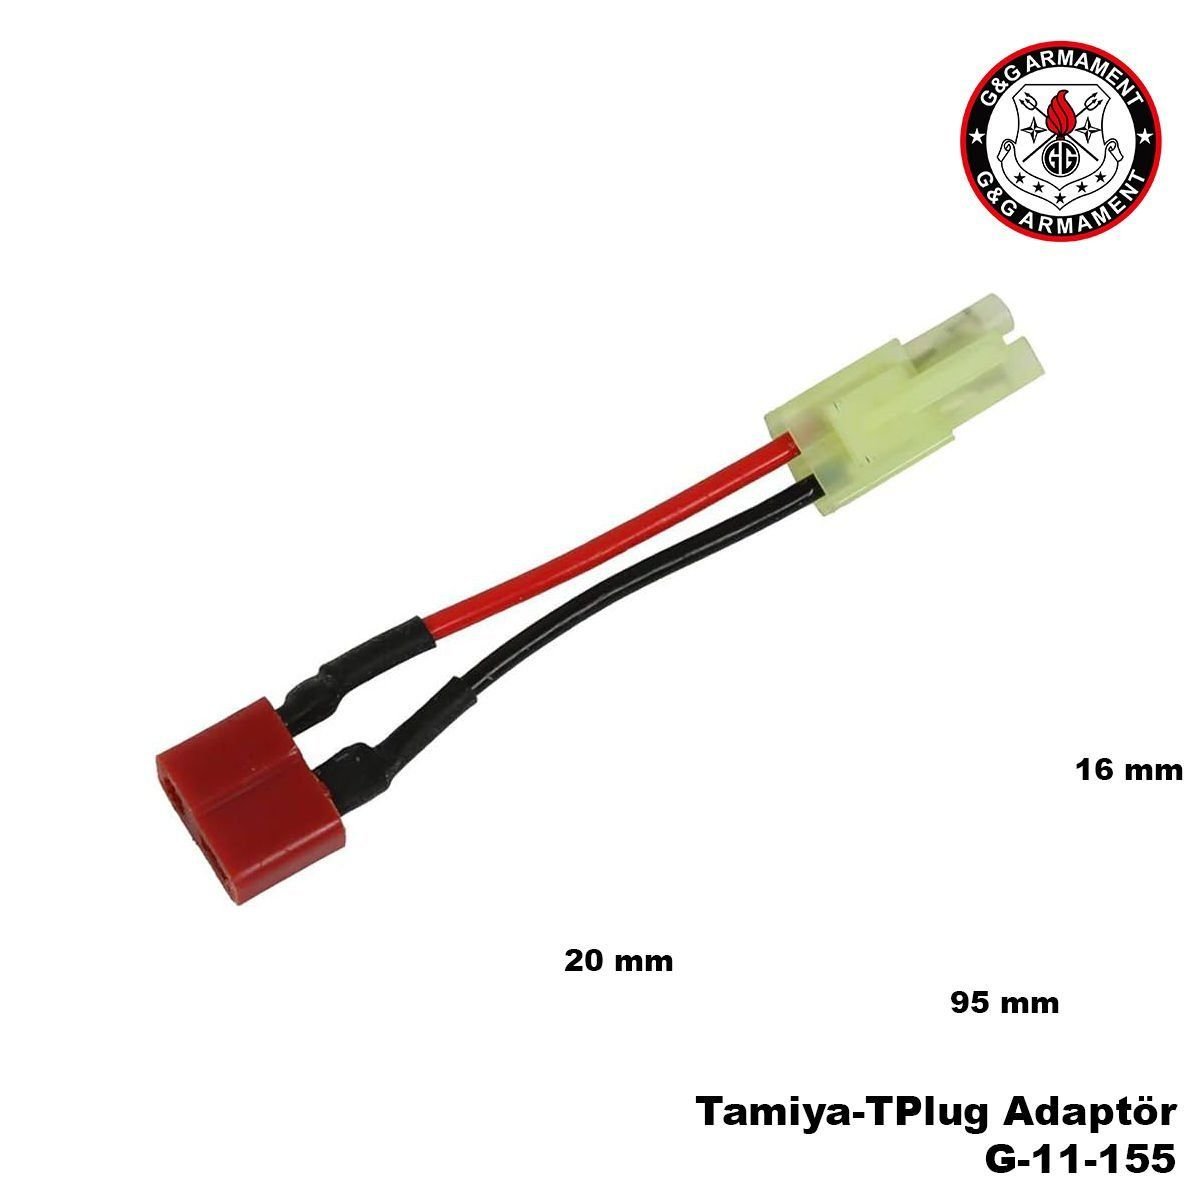 Tamiya-TPlug Adaptör G&G G-11-155